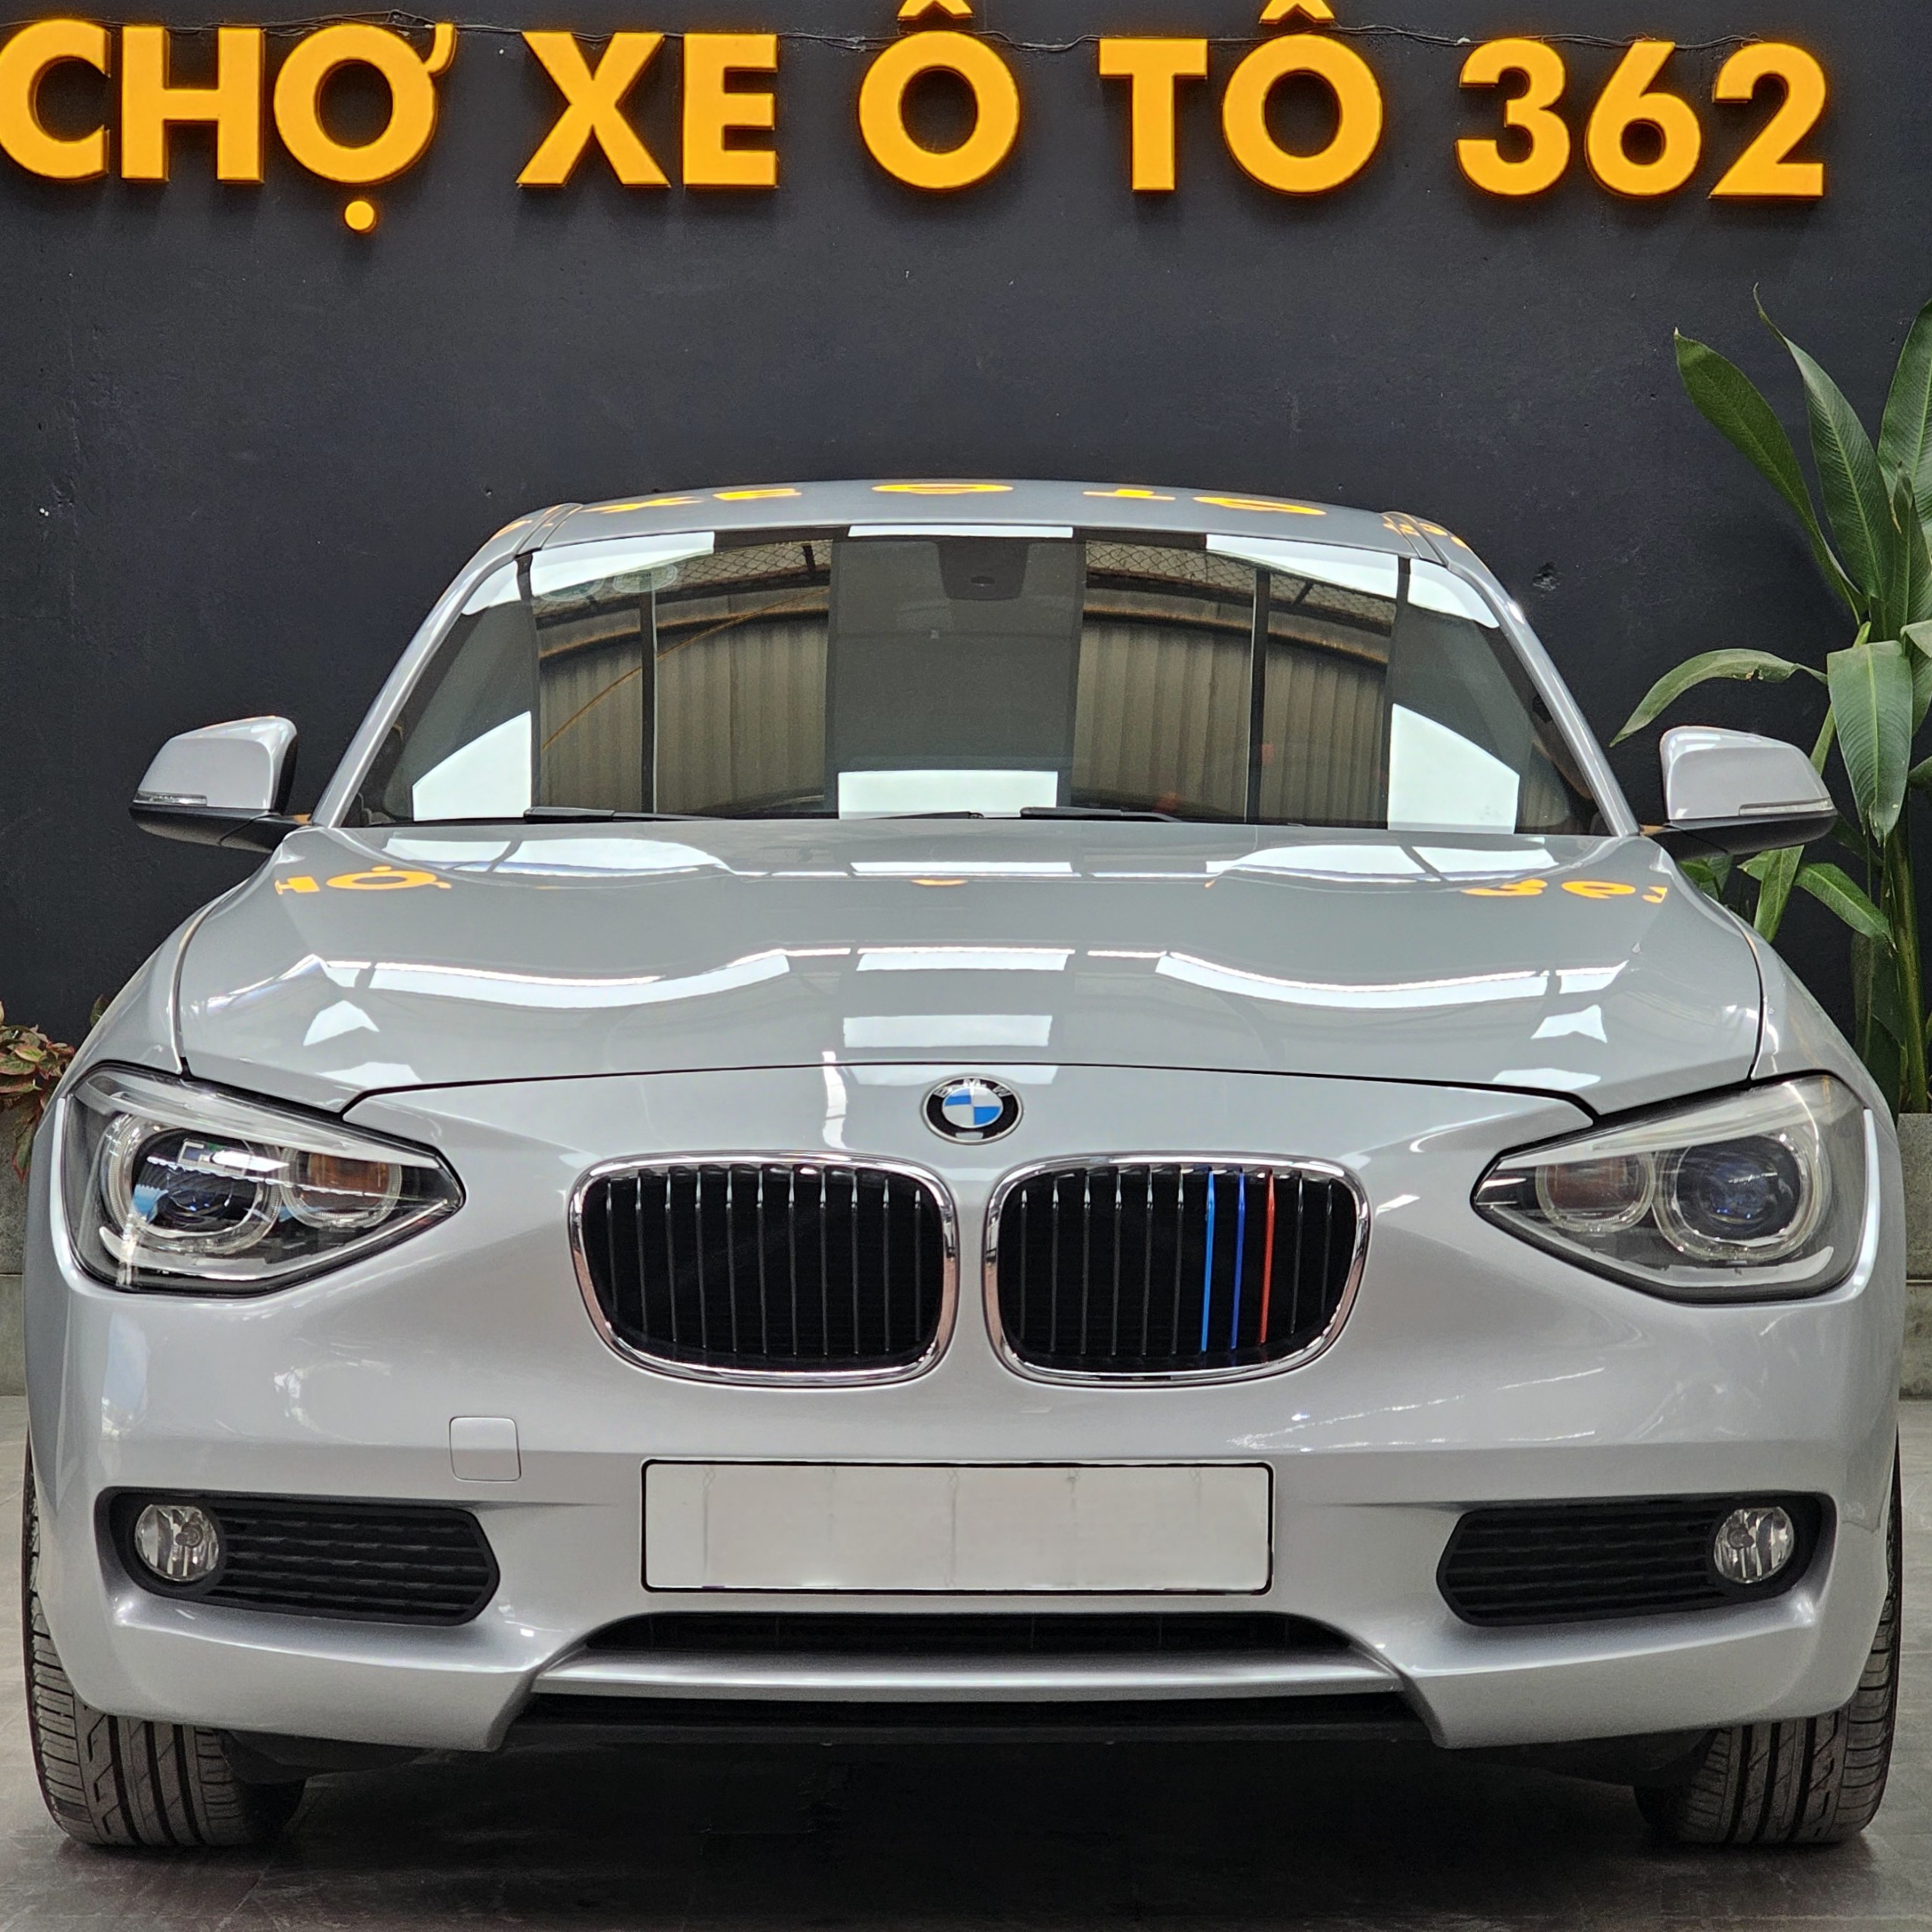 BMW 116i sản xuất 2013 dáng 2014 nhập khẩu nguyên chiếc Đức. Cá nhân 1 chủ